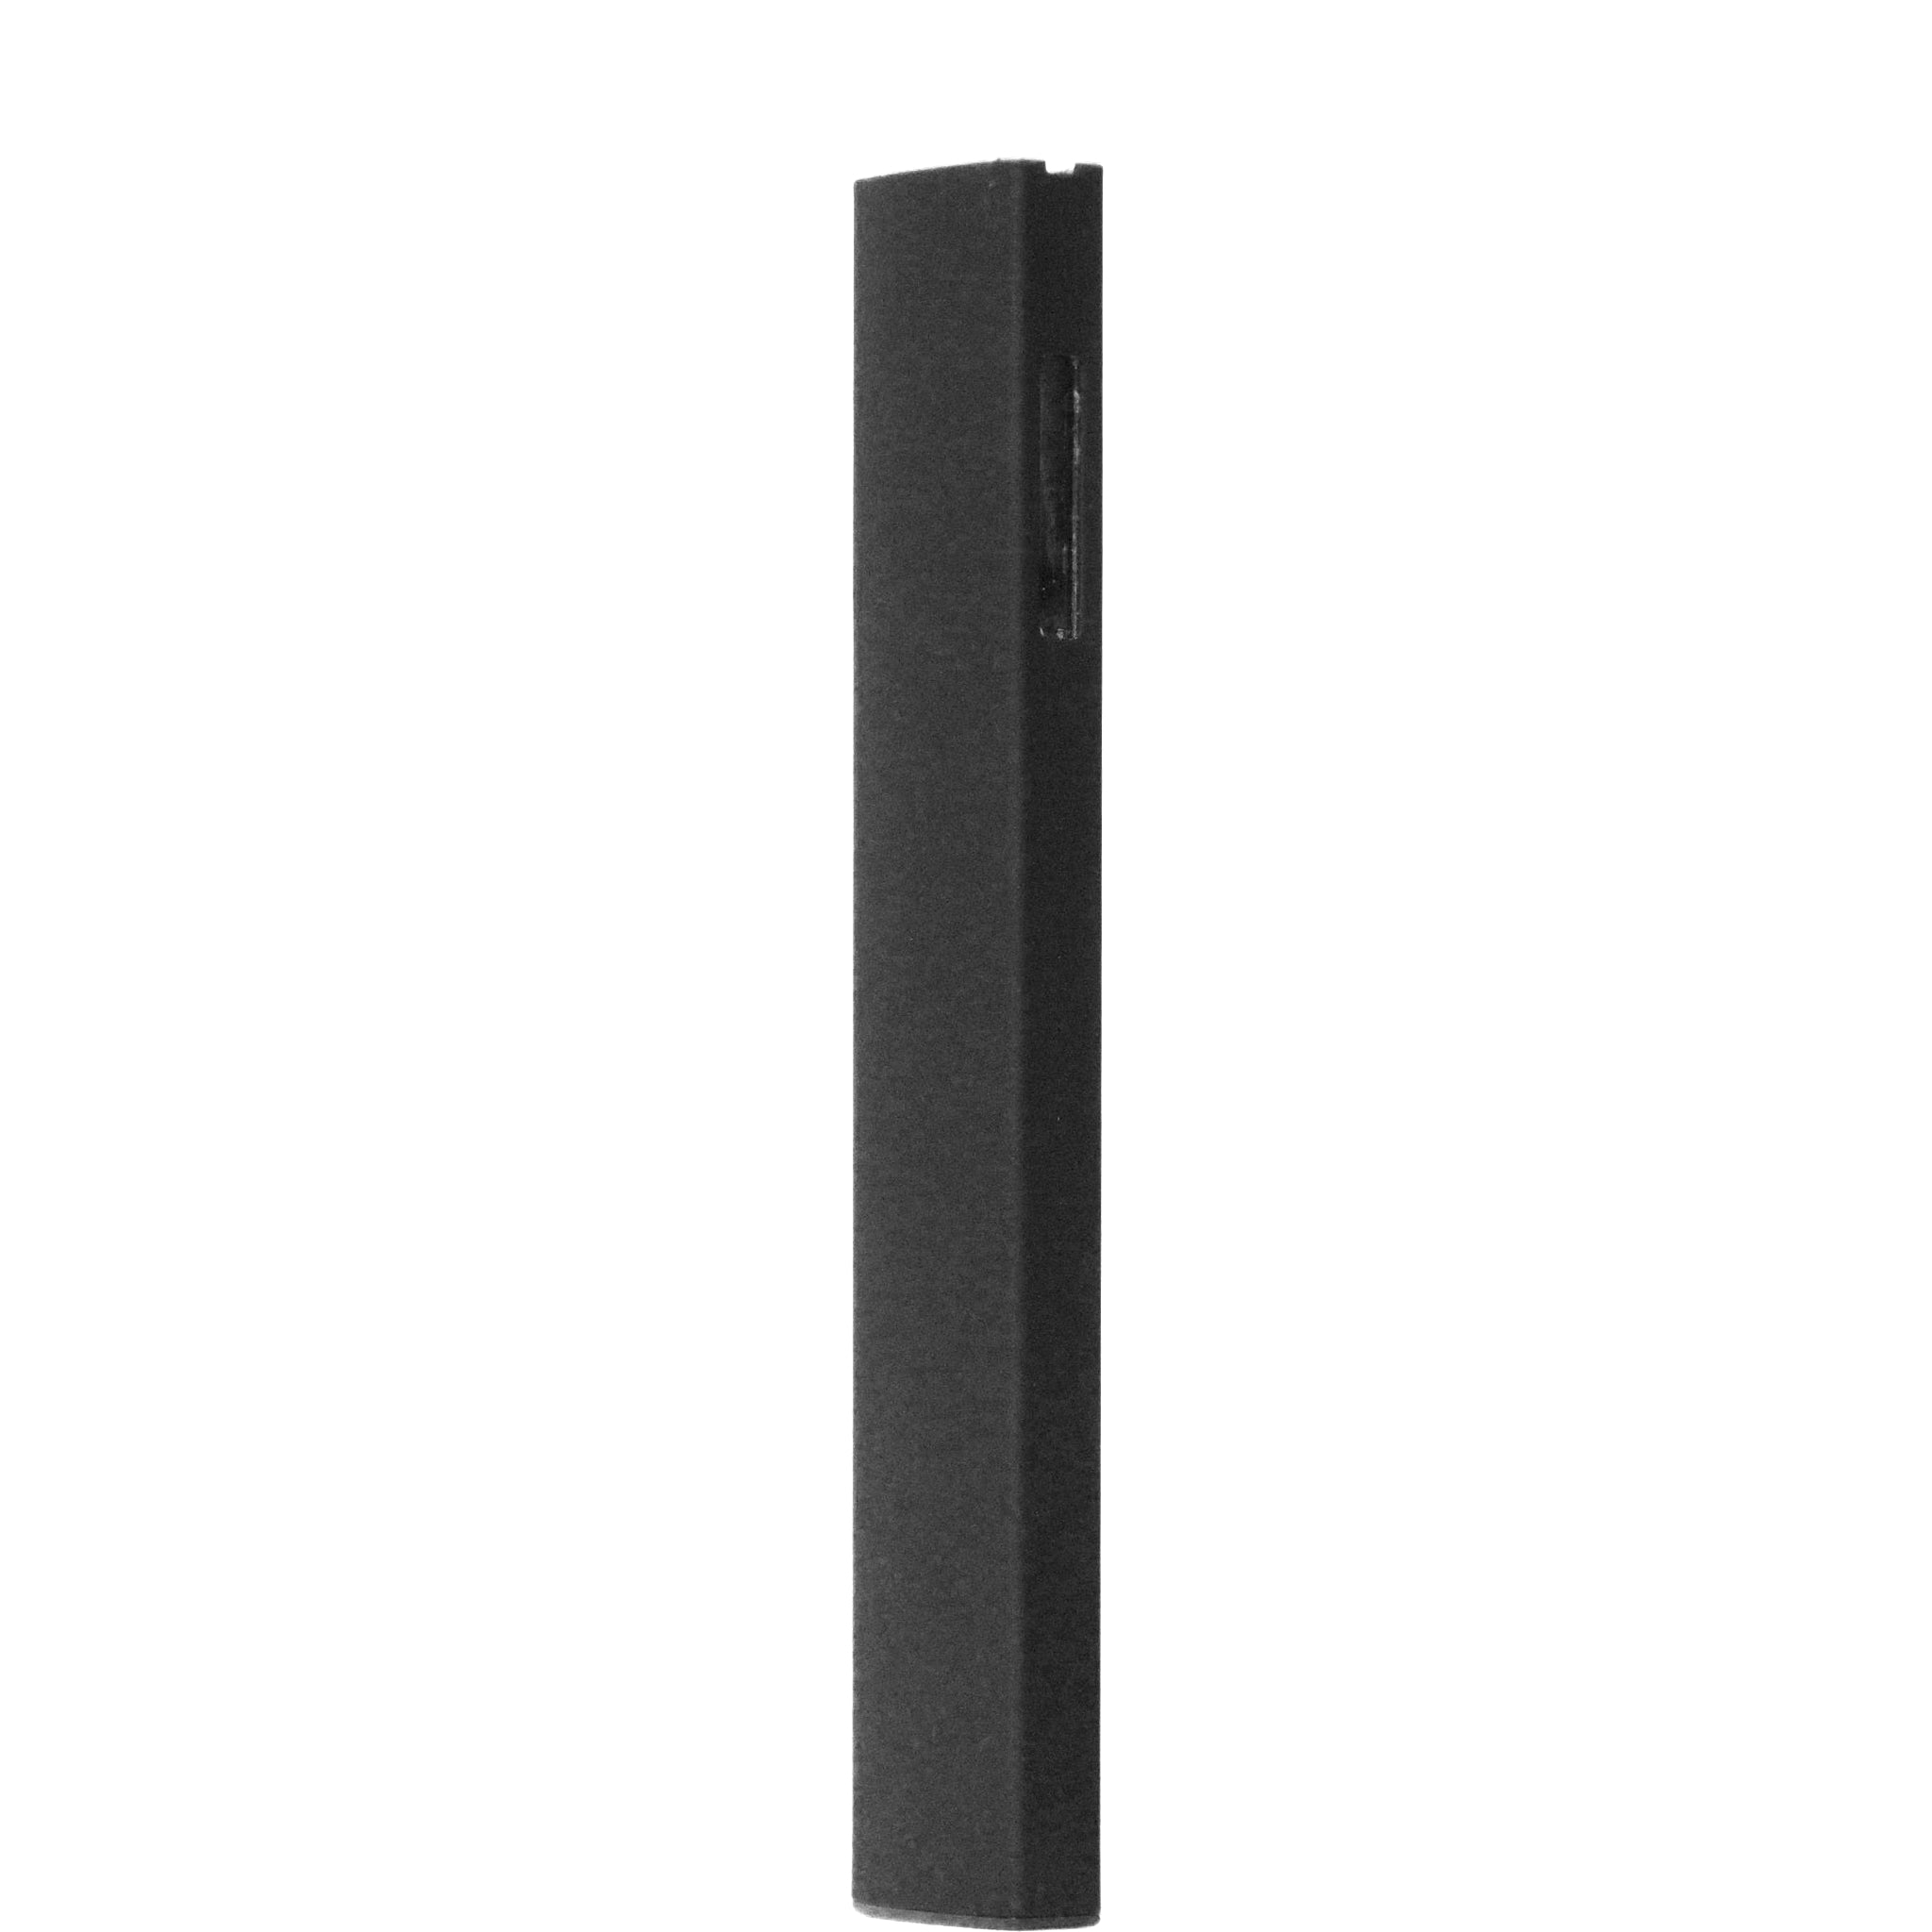 3rd Gen Disposable Side Window-Disposable Vaporizers-Vape Pens Wholesale